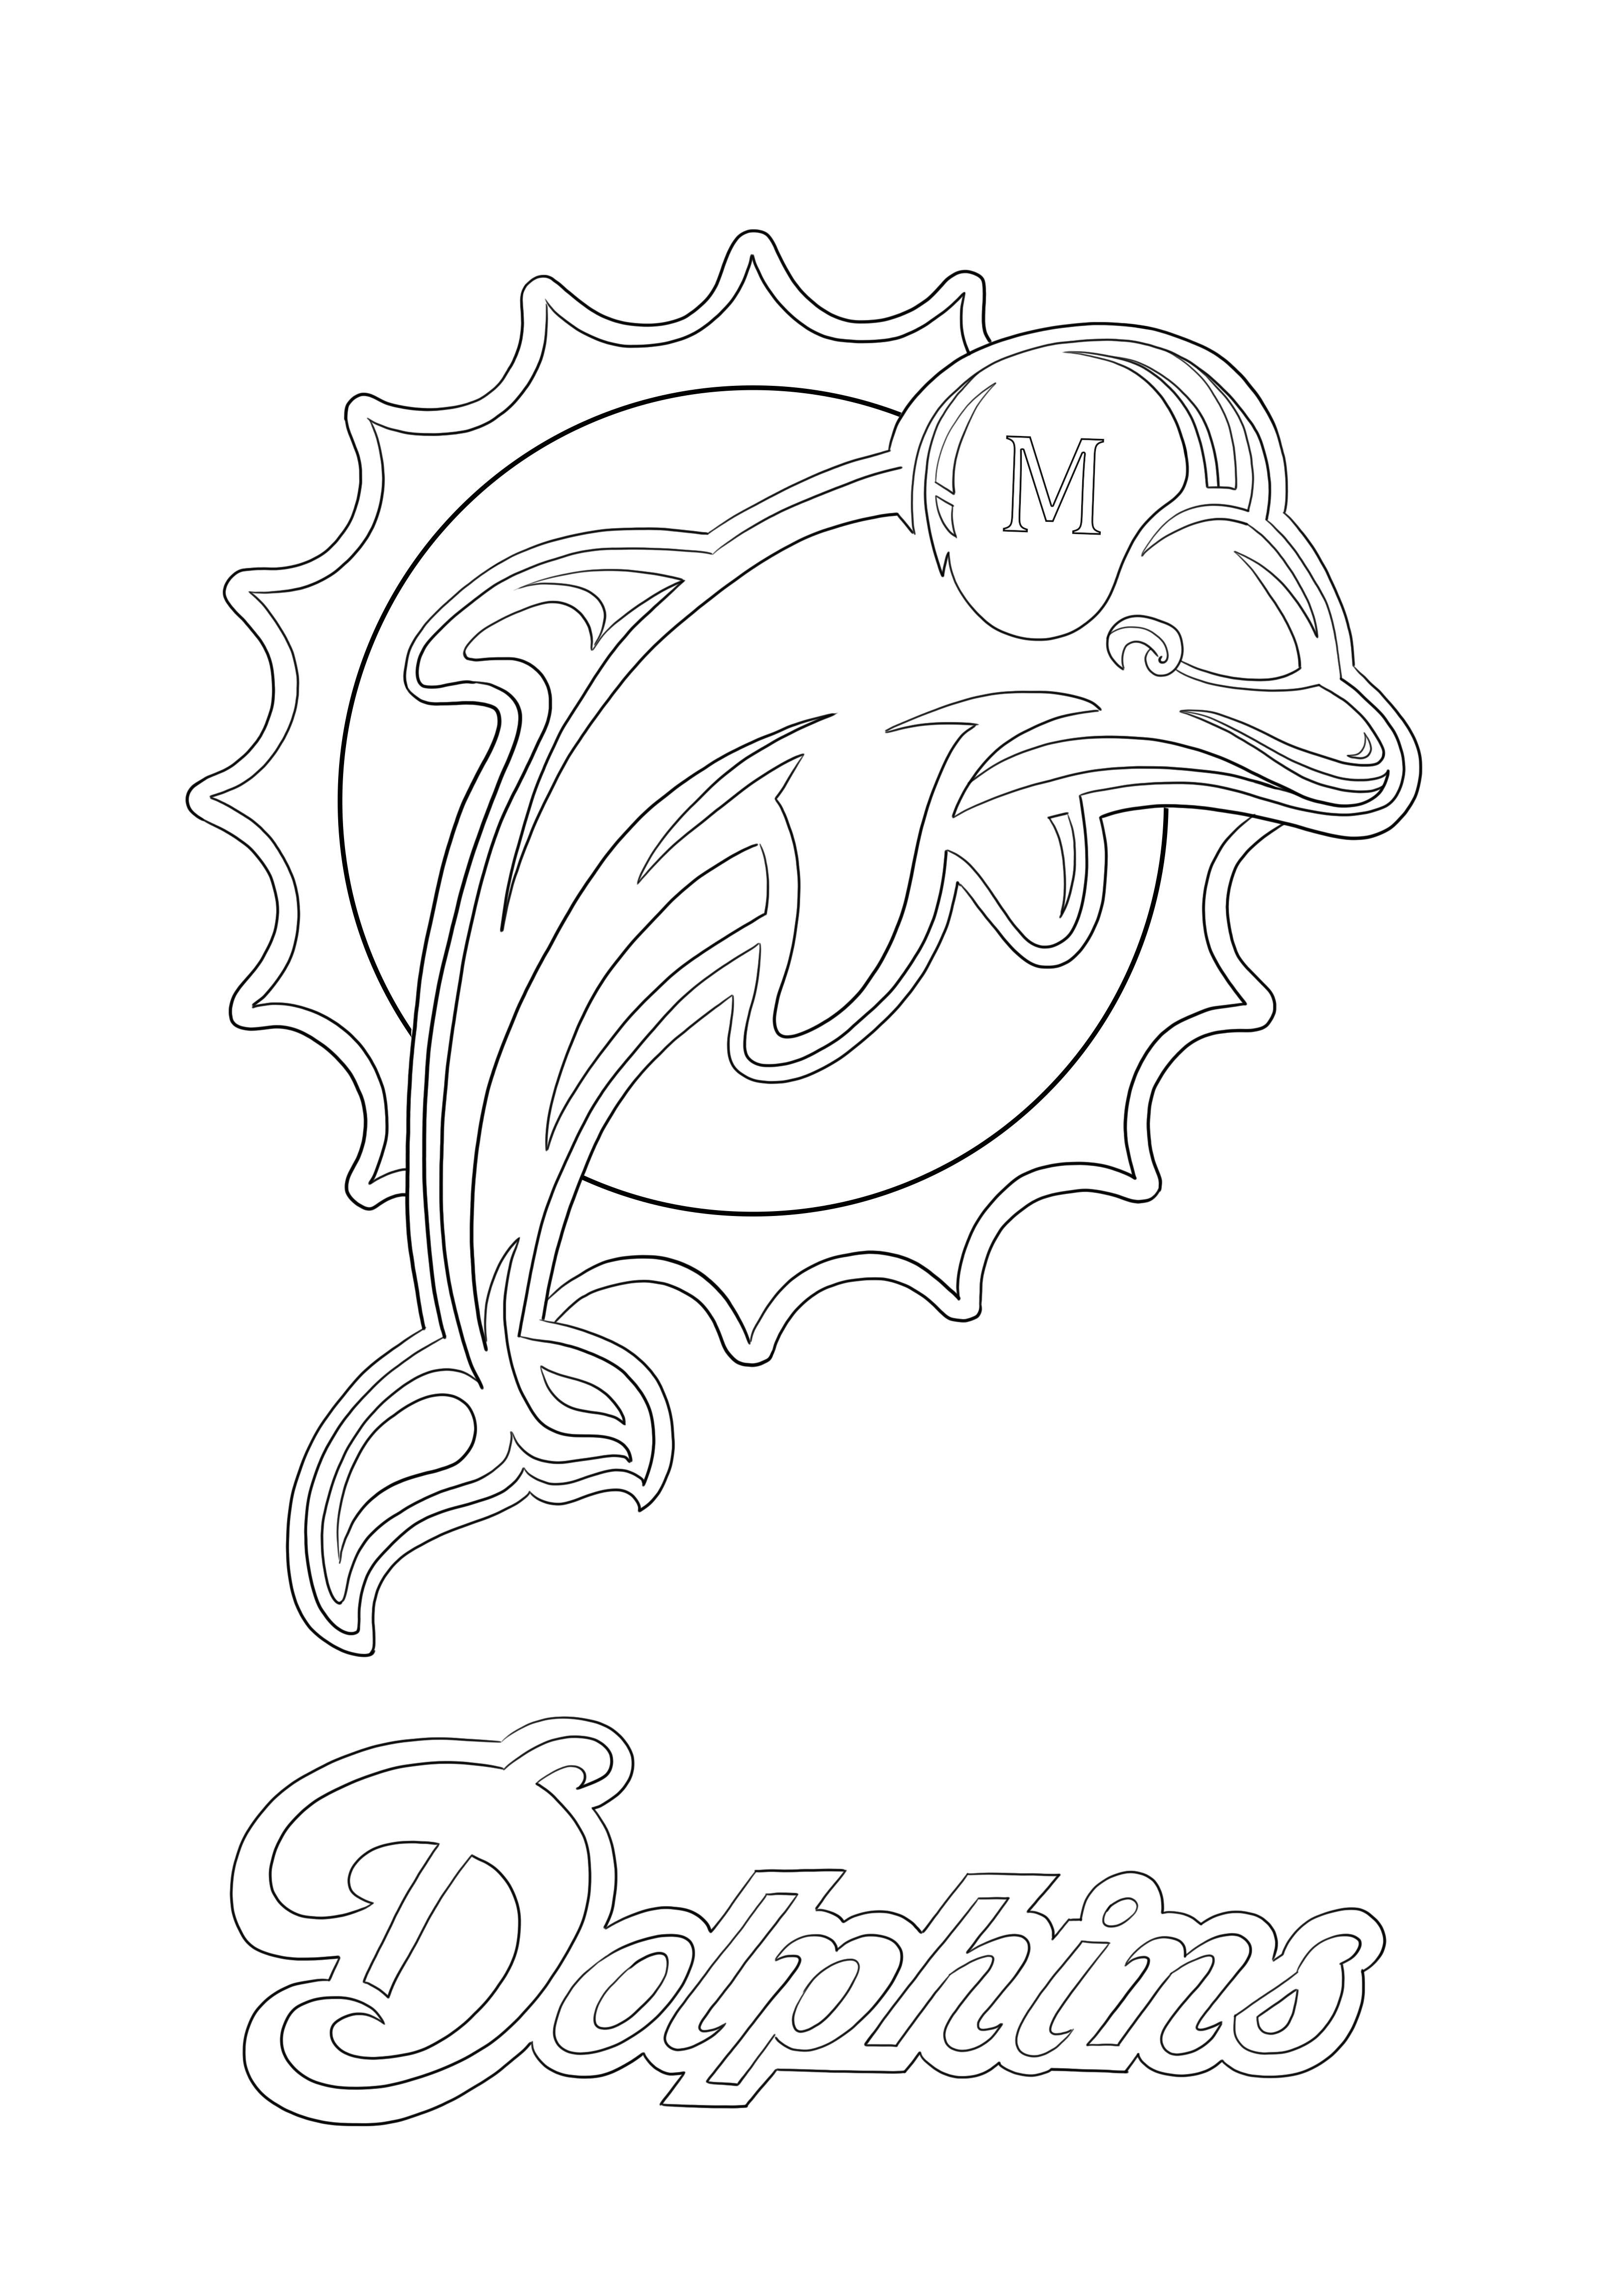 マイアミ・ドルフィンズのロゴの印刷とぬりえページ